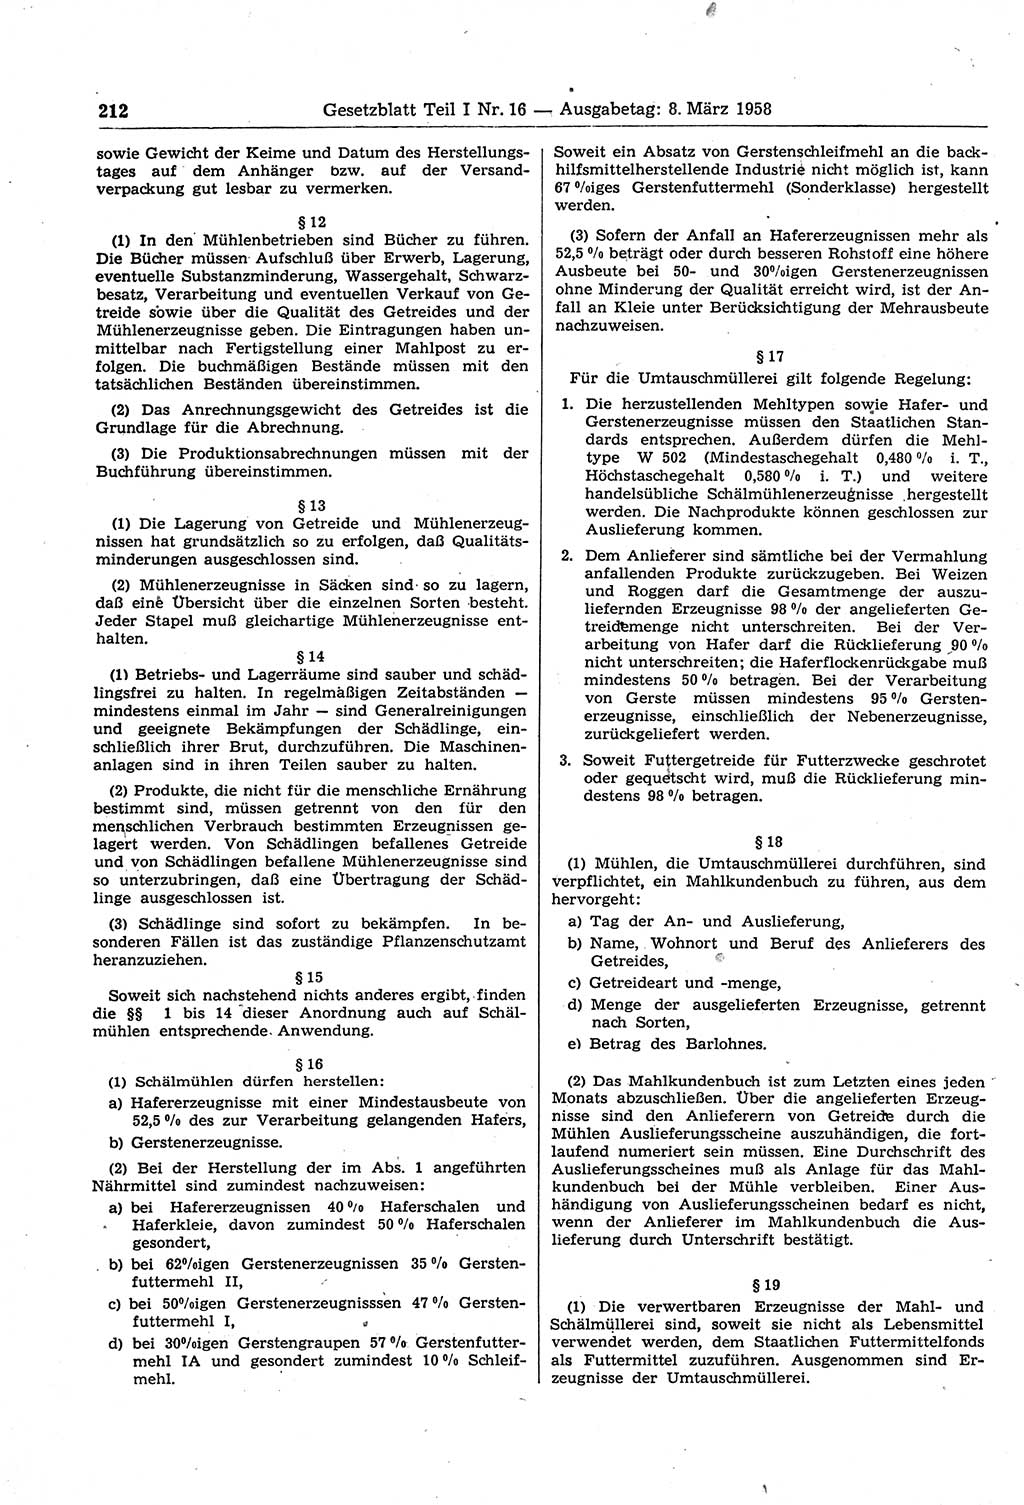 Gesetzblatt (GBl.) der Deutschen Demokratischen Republik (DDR) Teil Ⅰ 1958, Seite 212 (GBl. DDR Ⅰ 1958, S. 212)